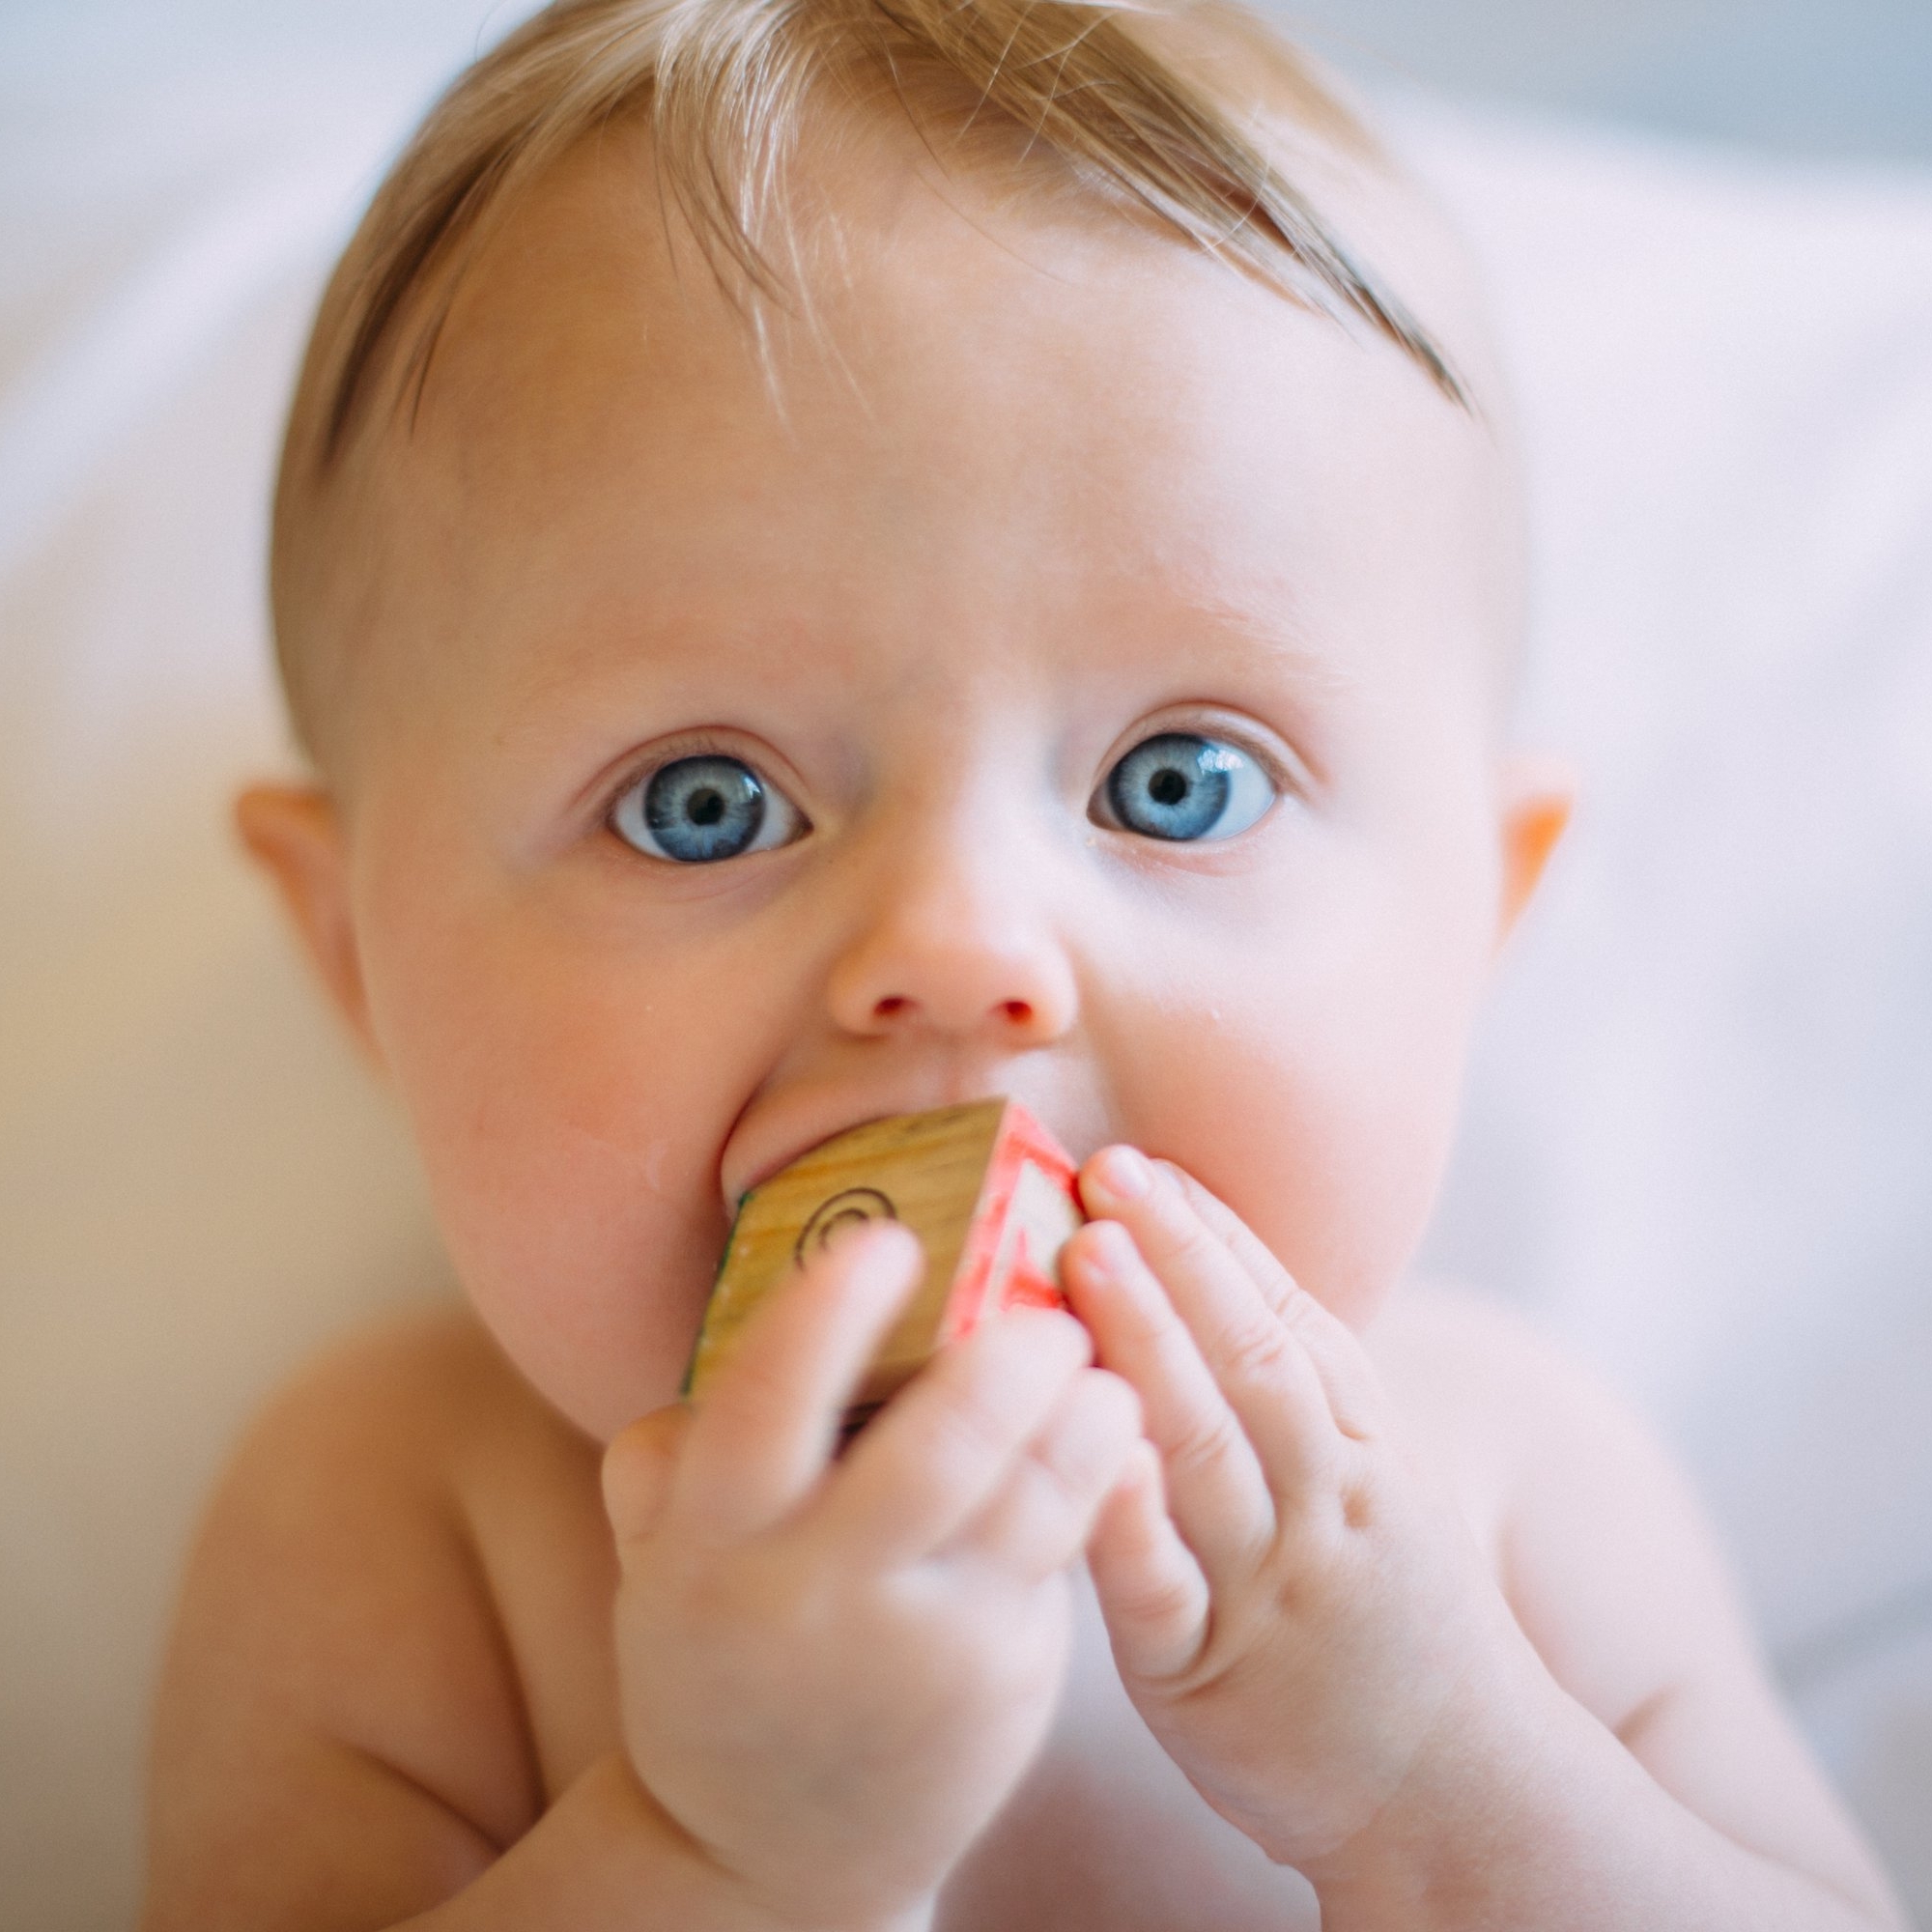 Infant eating block.jpg